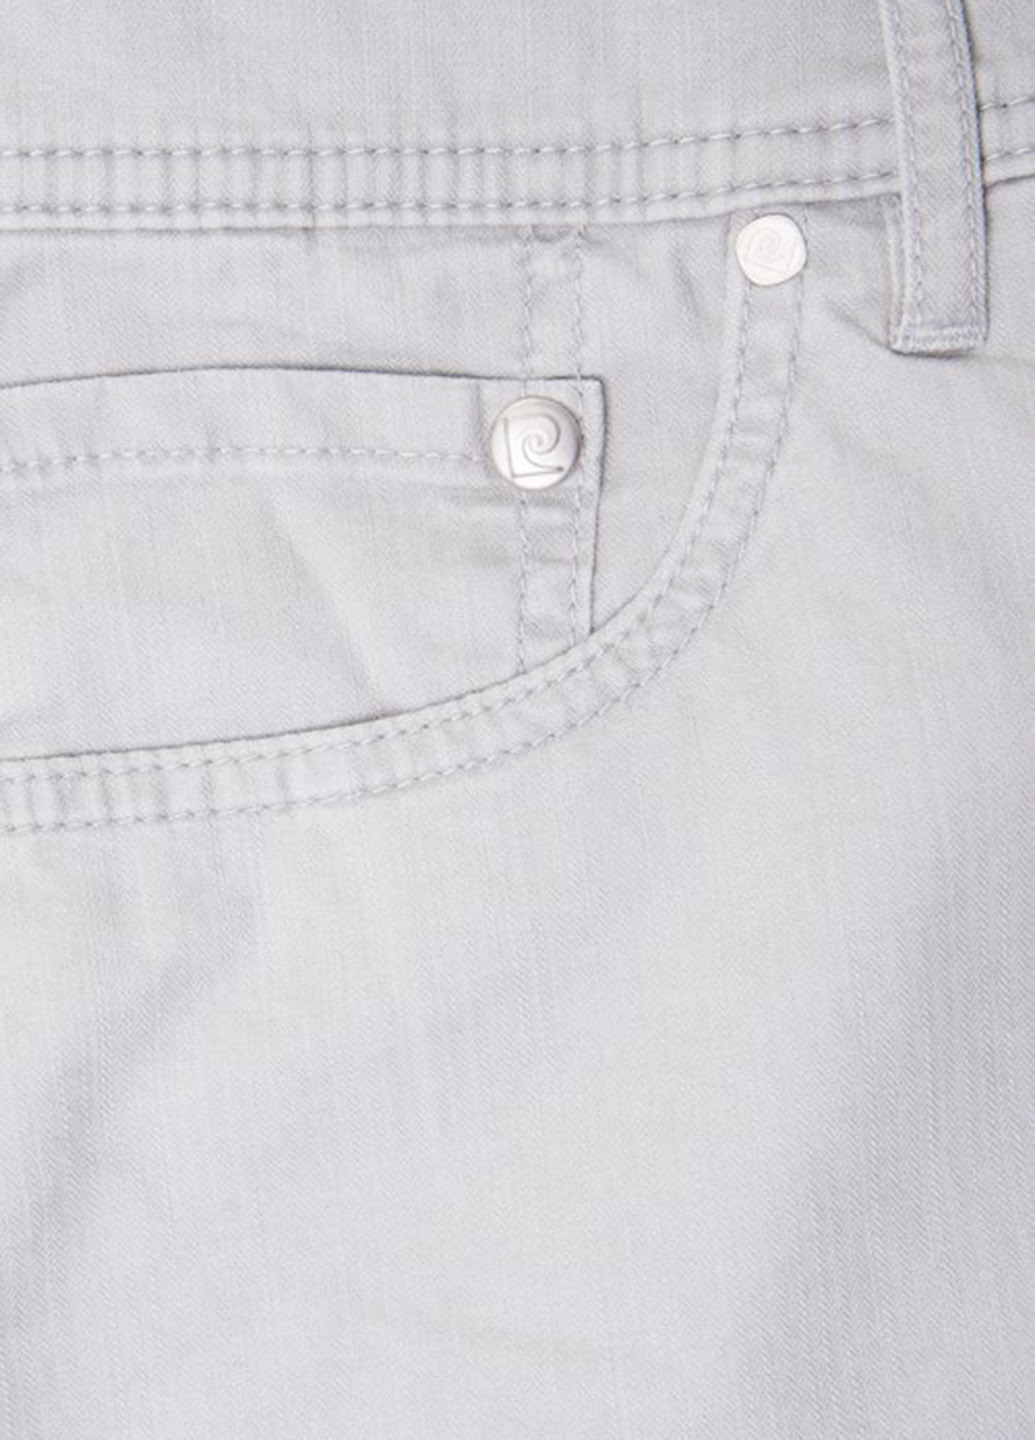 Светло-серые демисезонные зауженные джинсы Pierre Cardin